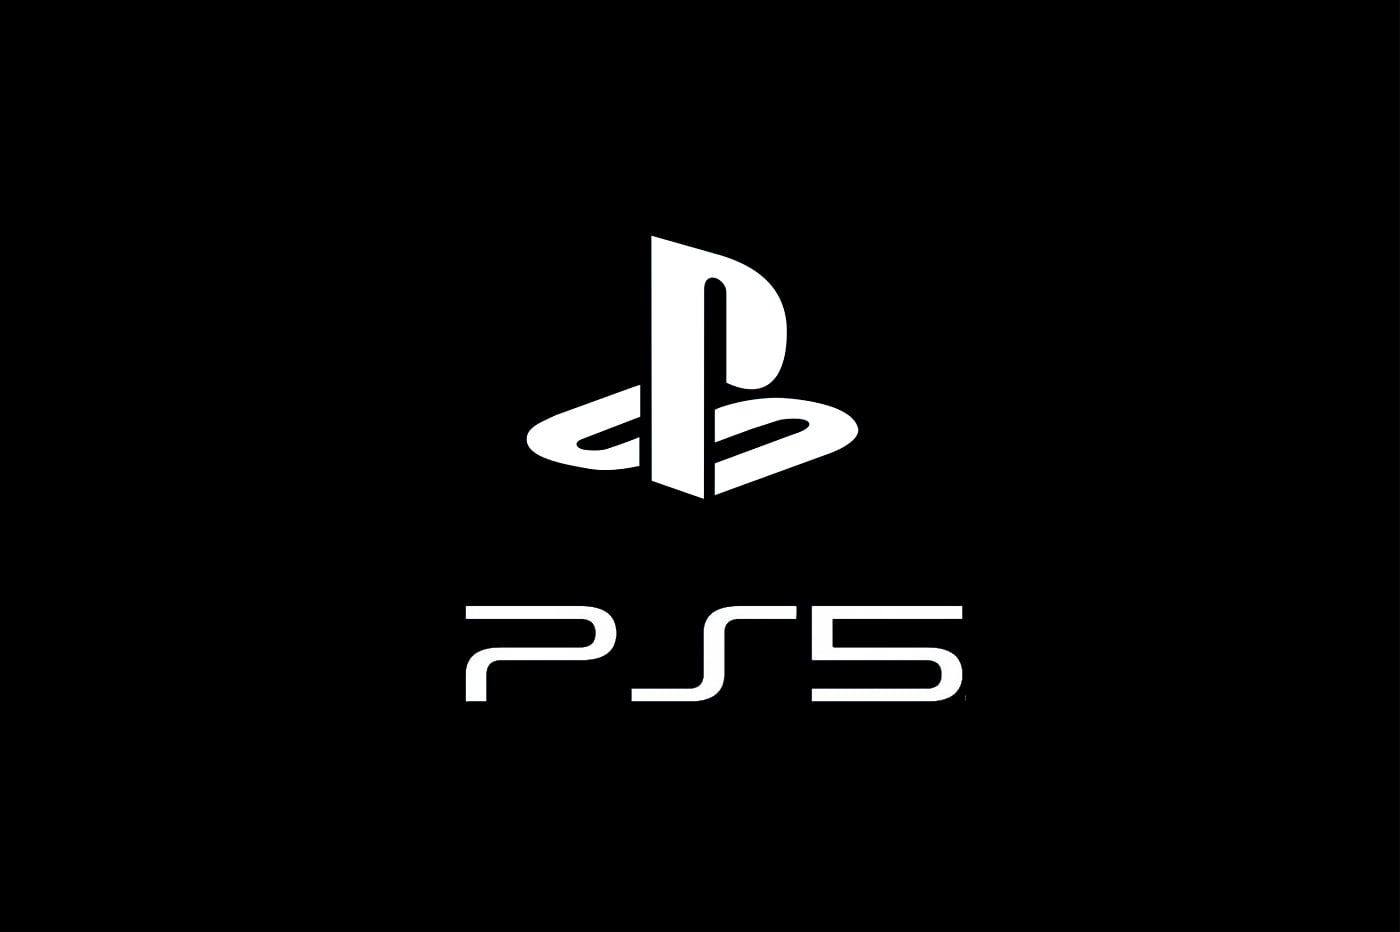 Ps5 não terá lançamento em outubro | b3282431 ps5 pas avant avril 2020 | married games notícias | ps5